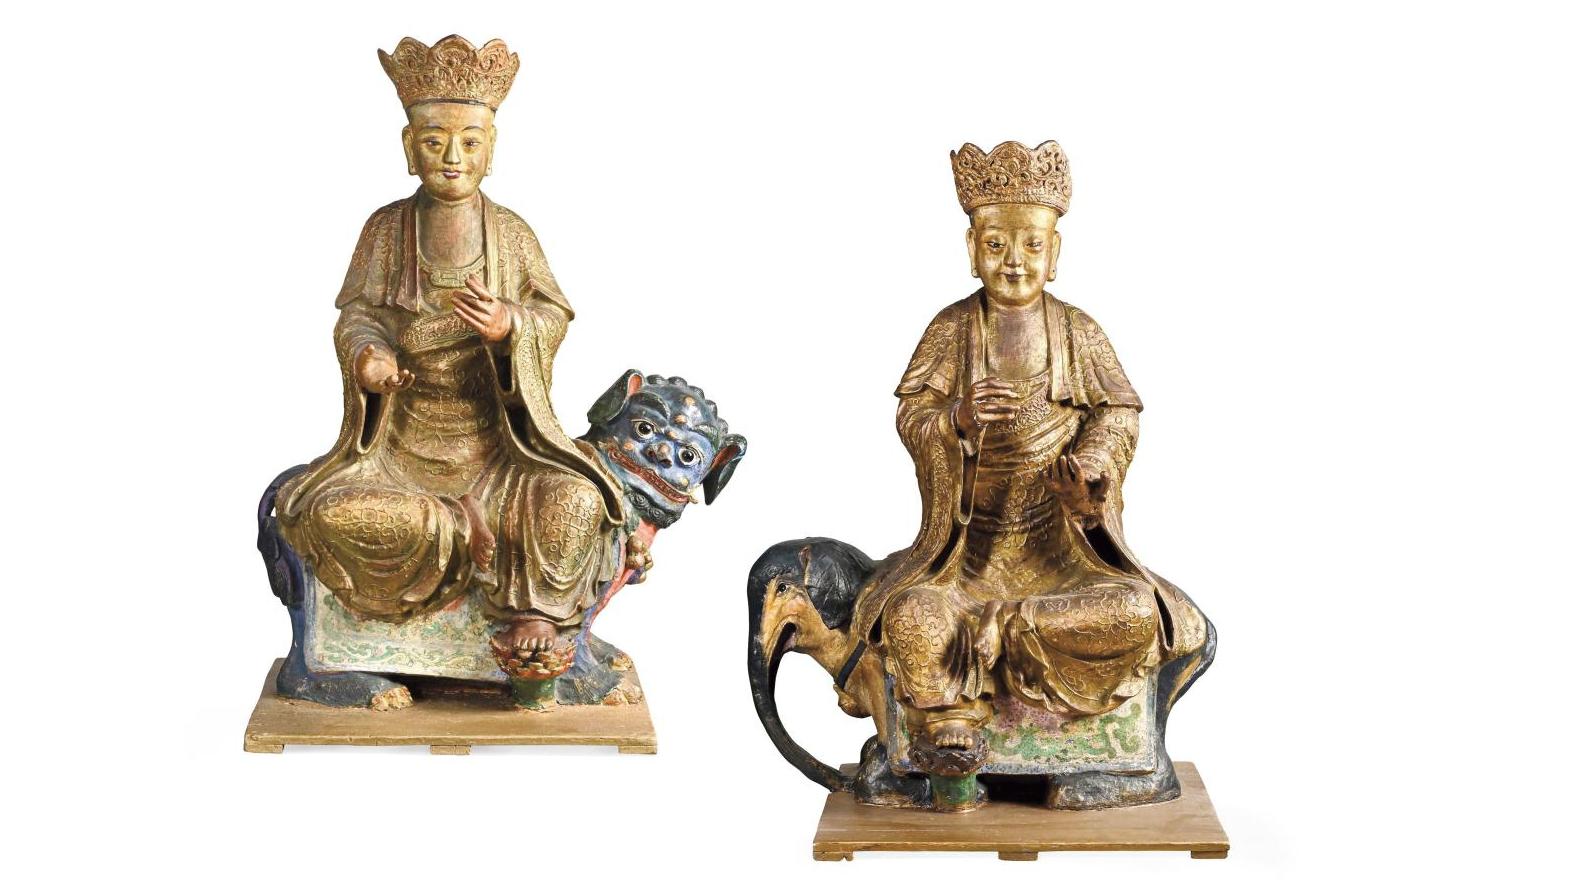 Chine du Sud, XVIIIe siècle. Paire de grands dignitaires en bois sculpté et laqué... Le voyage de deux bouddhistes de qualité